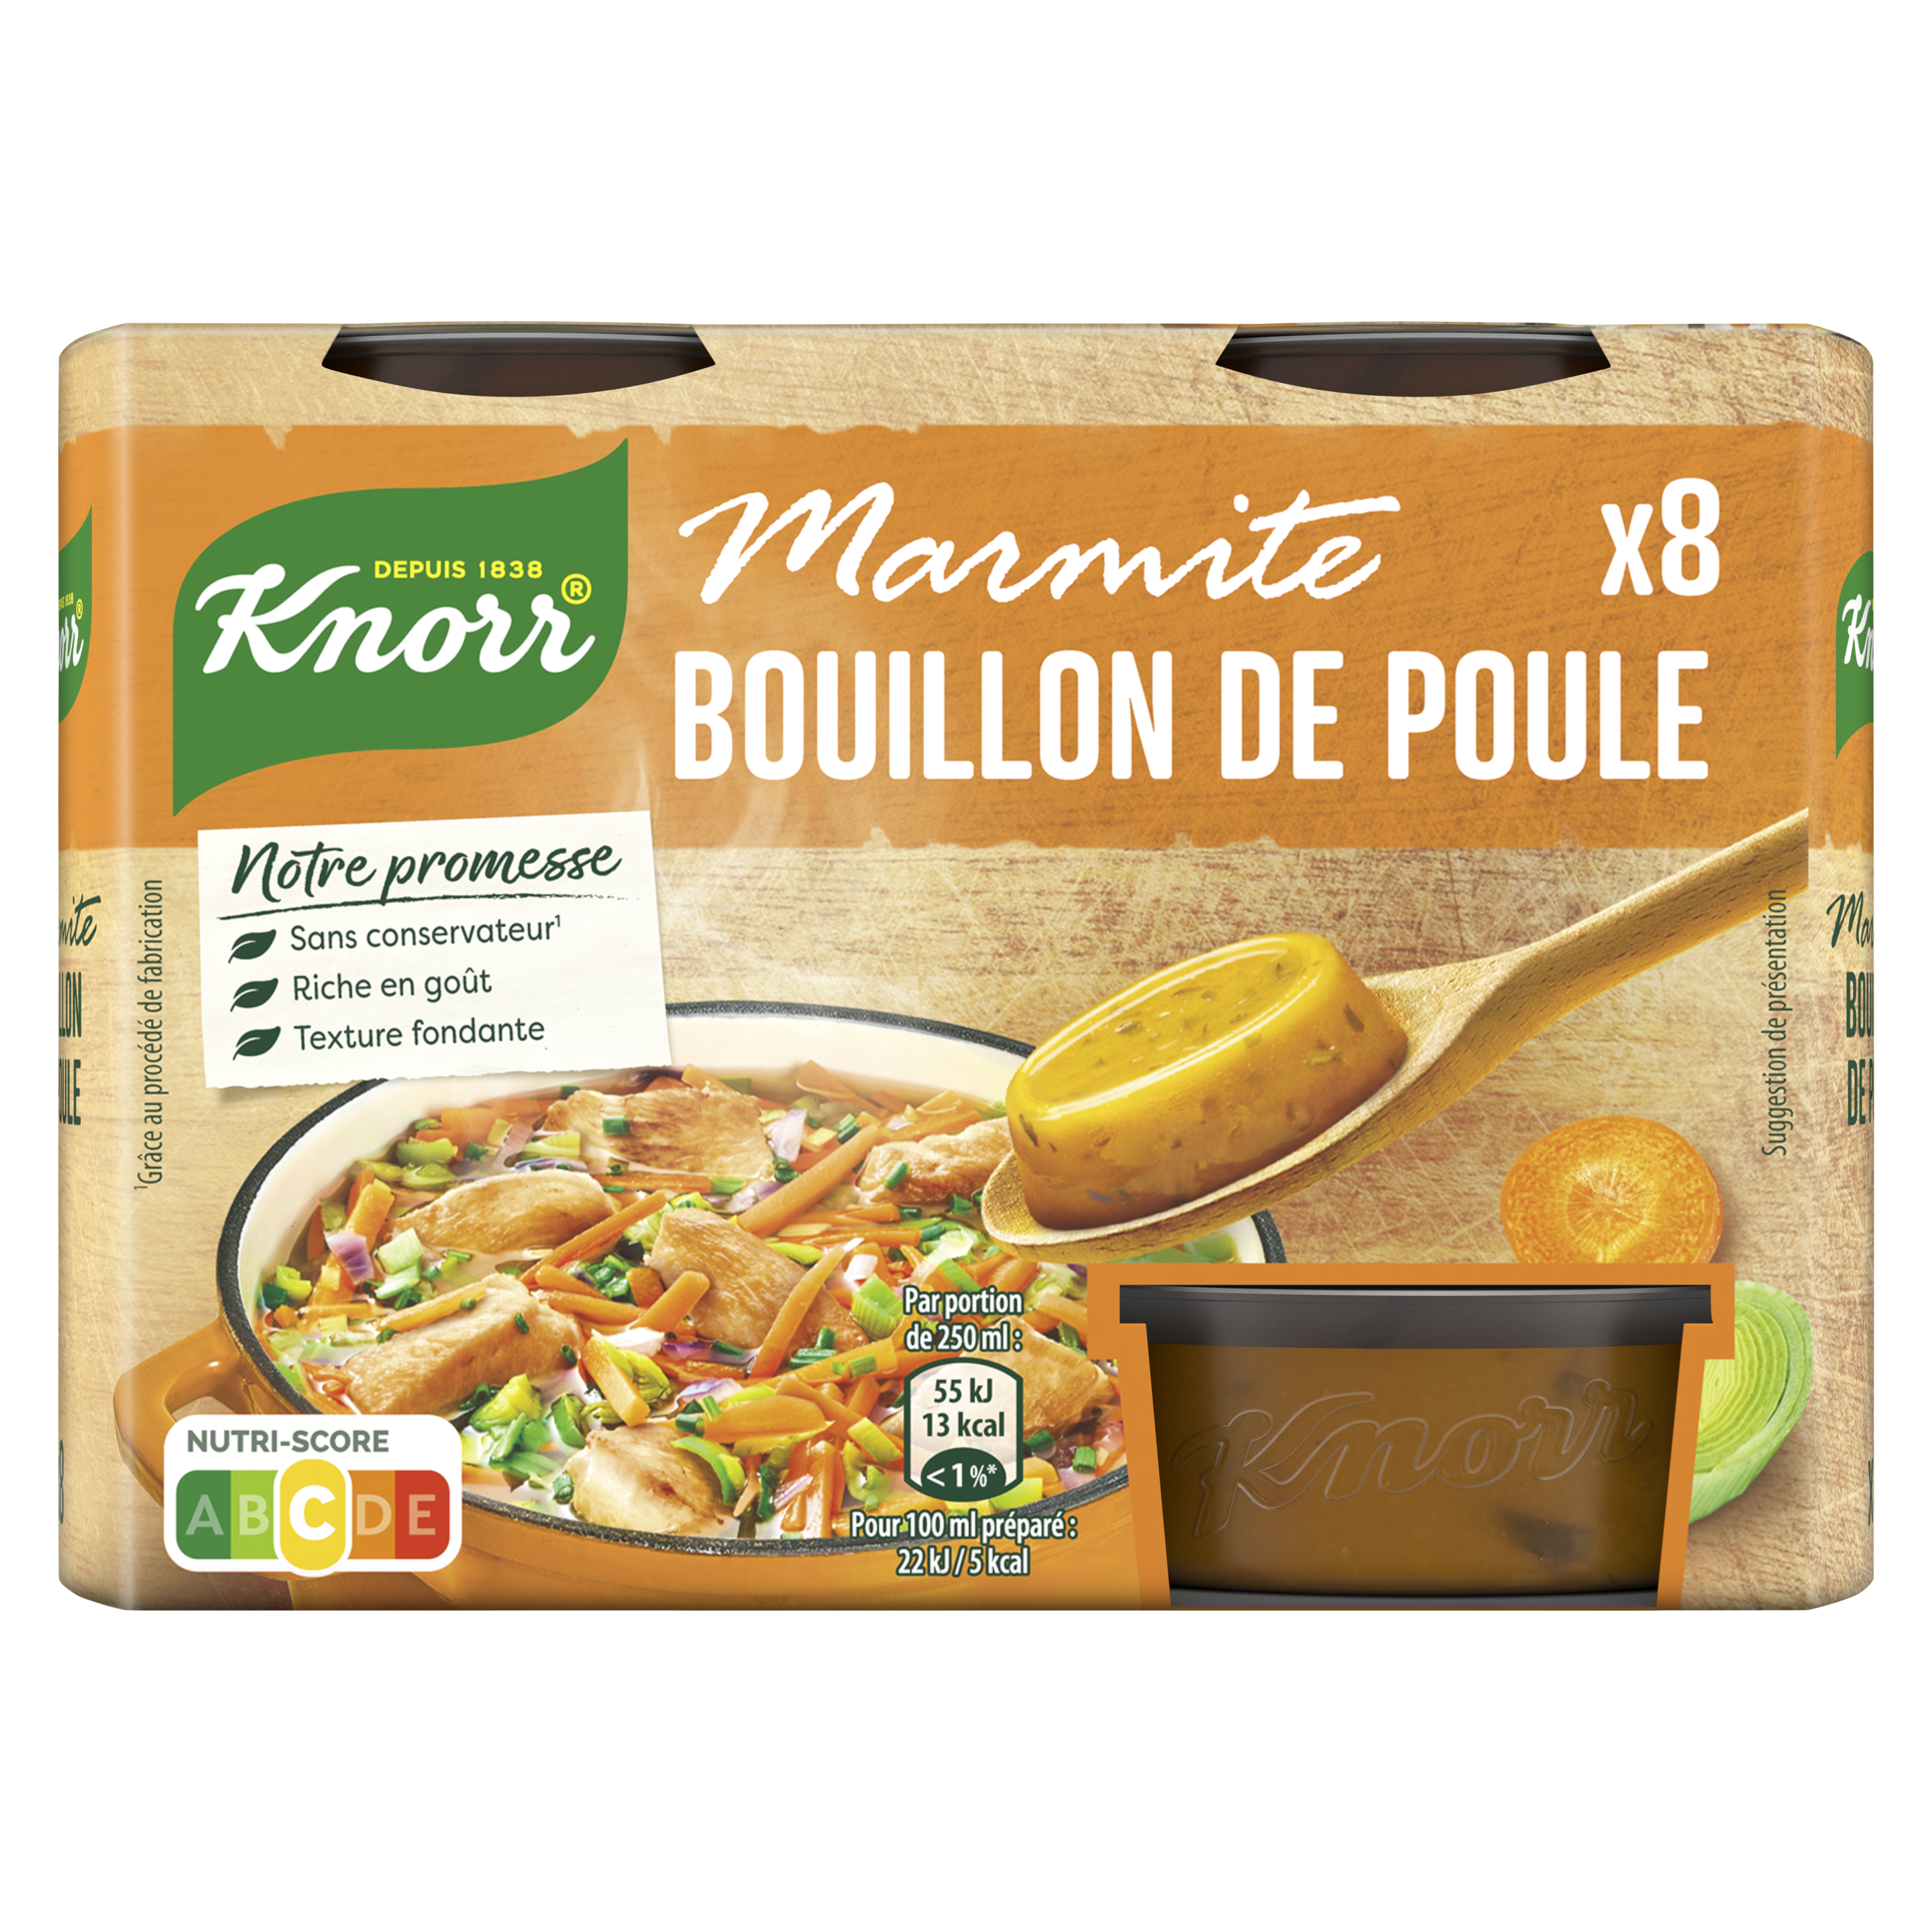 Marmite de Bouillon® Poule